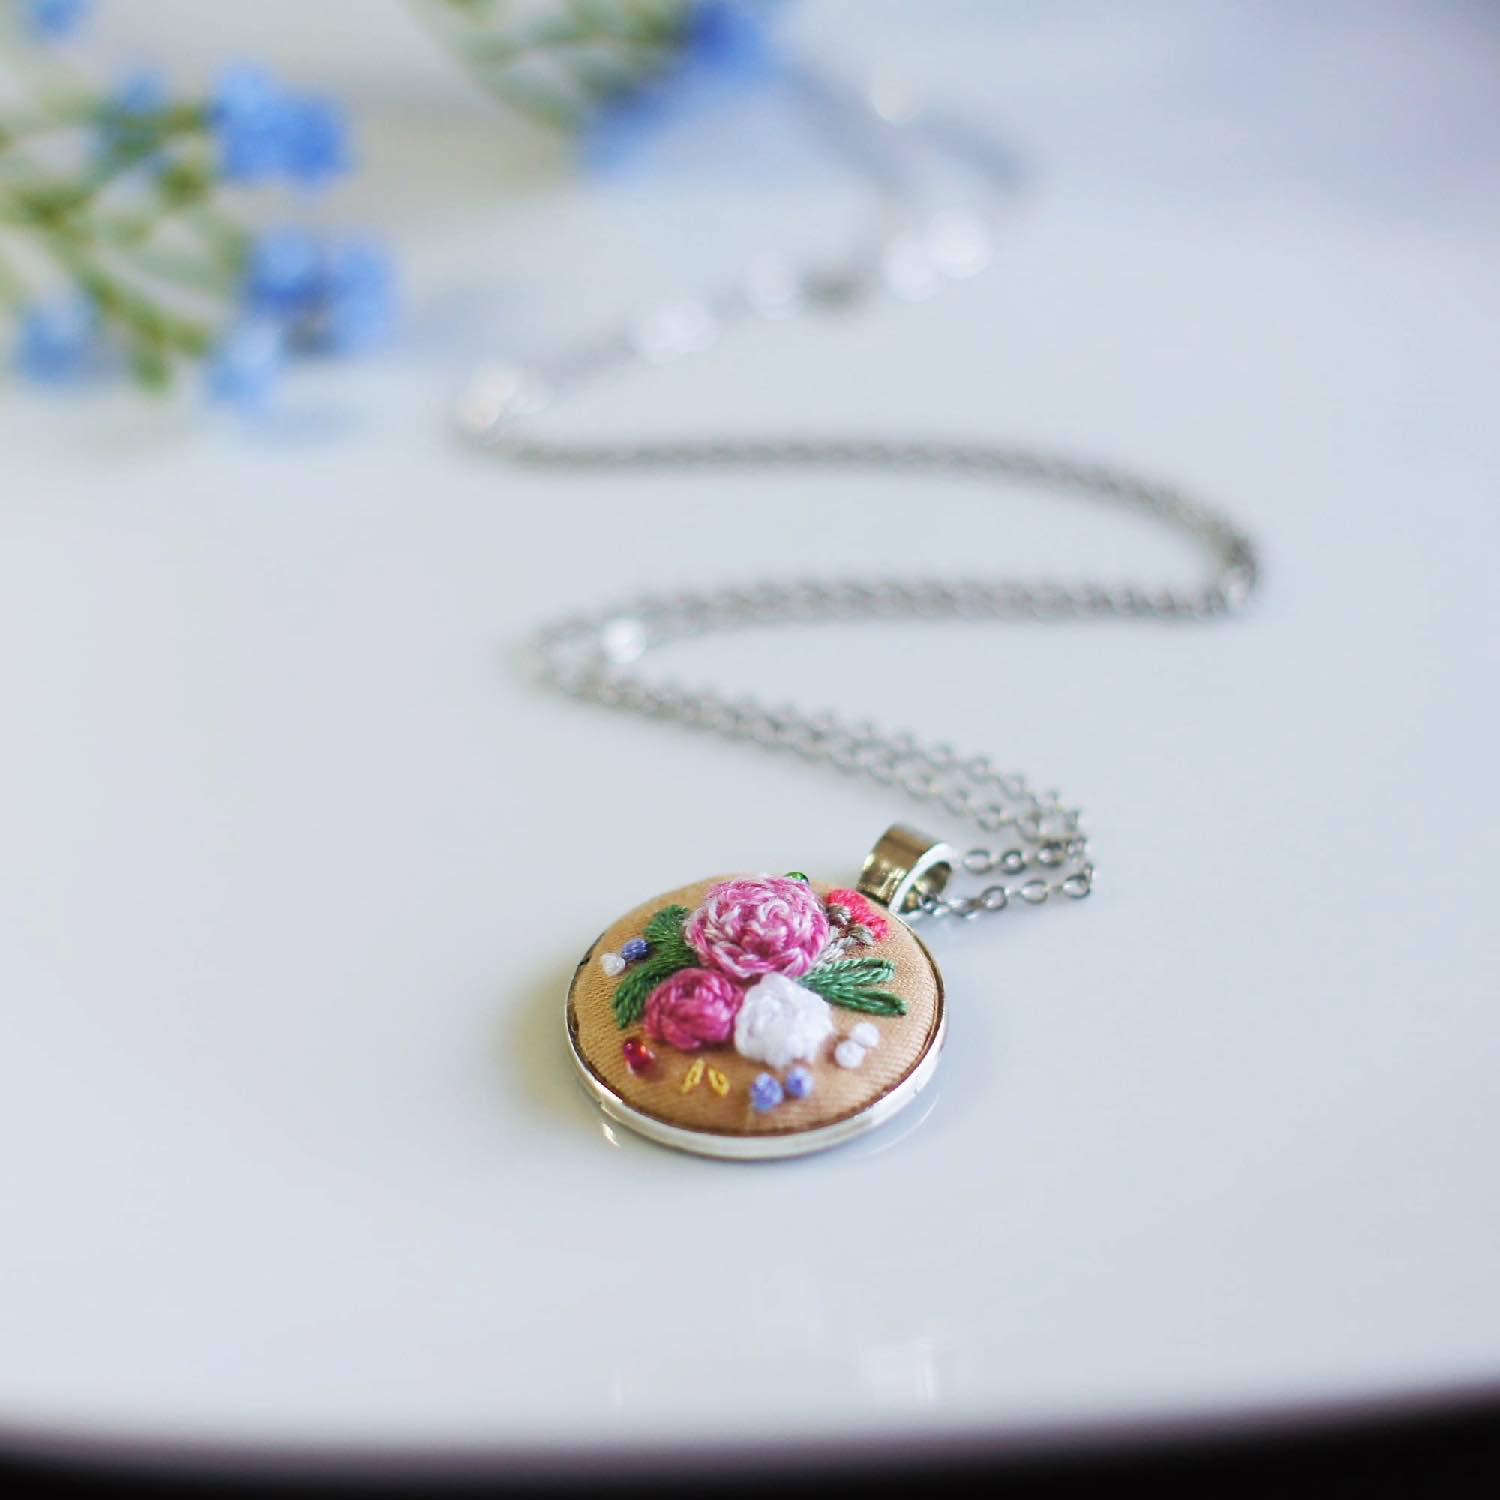 embroidery pendant - rose garden